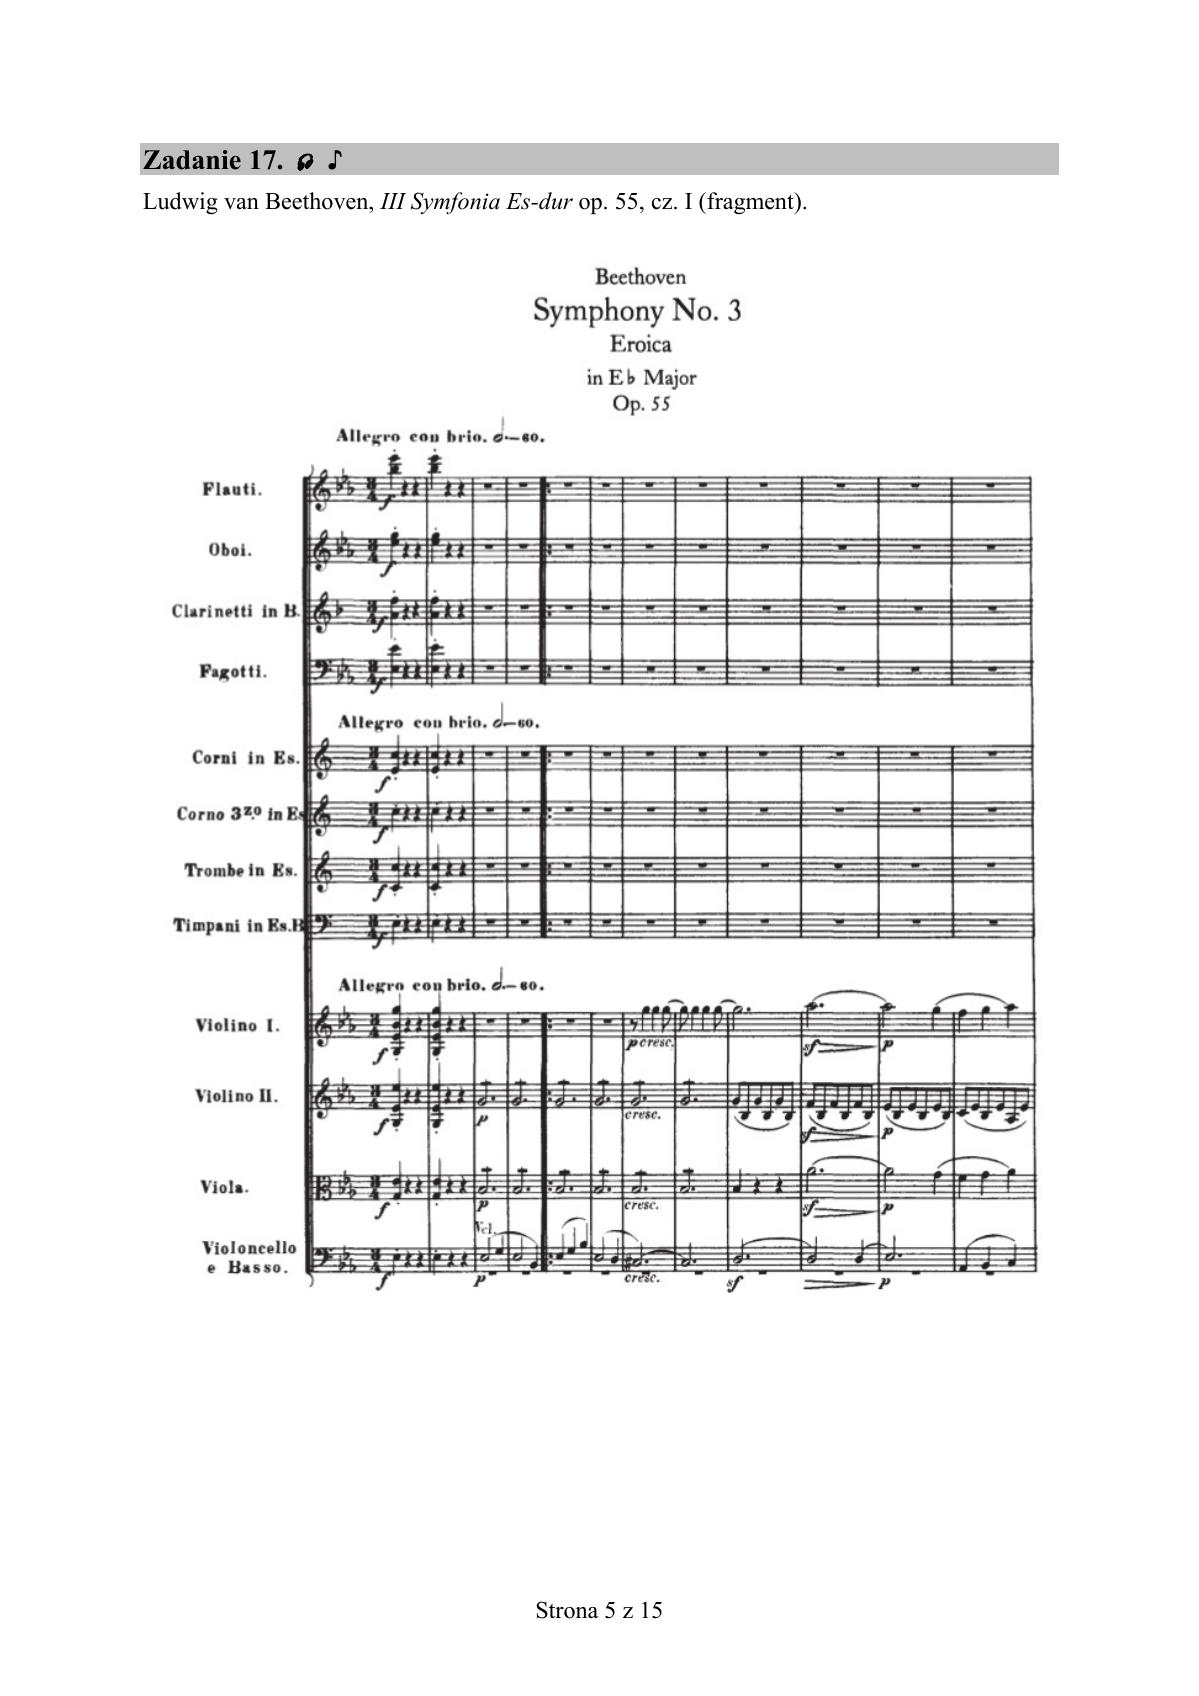 zadanie 17 - Ludwig van Beethoven, III Symfonia Es-dur op. 55, cz. I - fragment-1